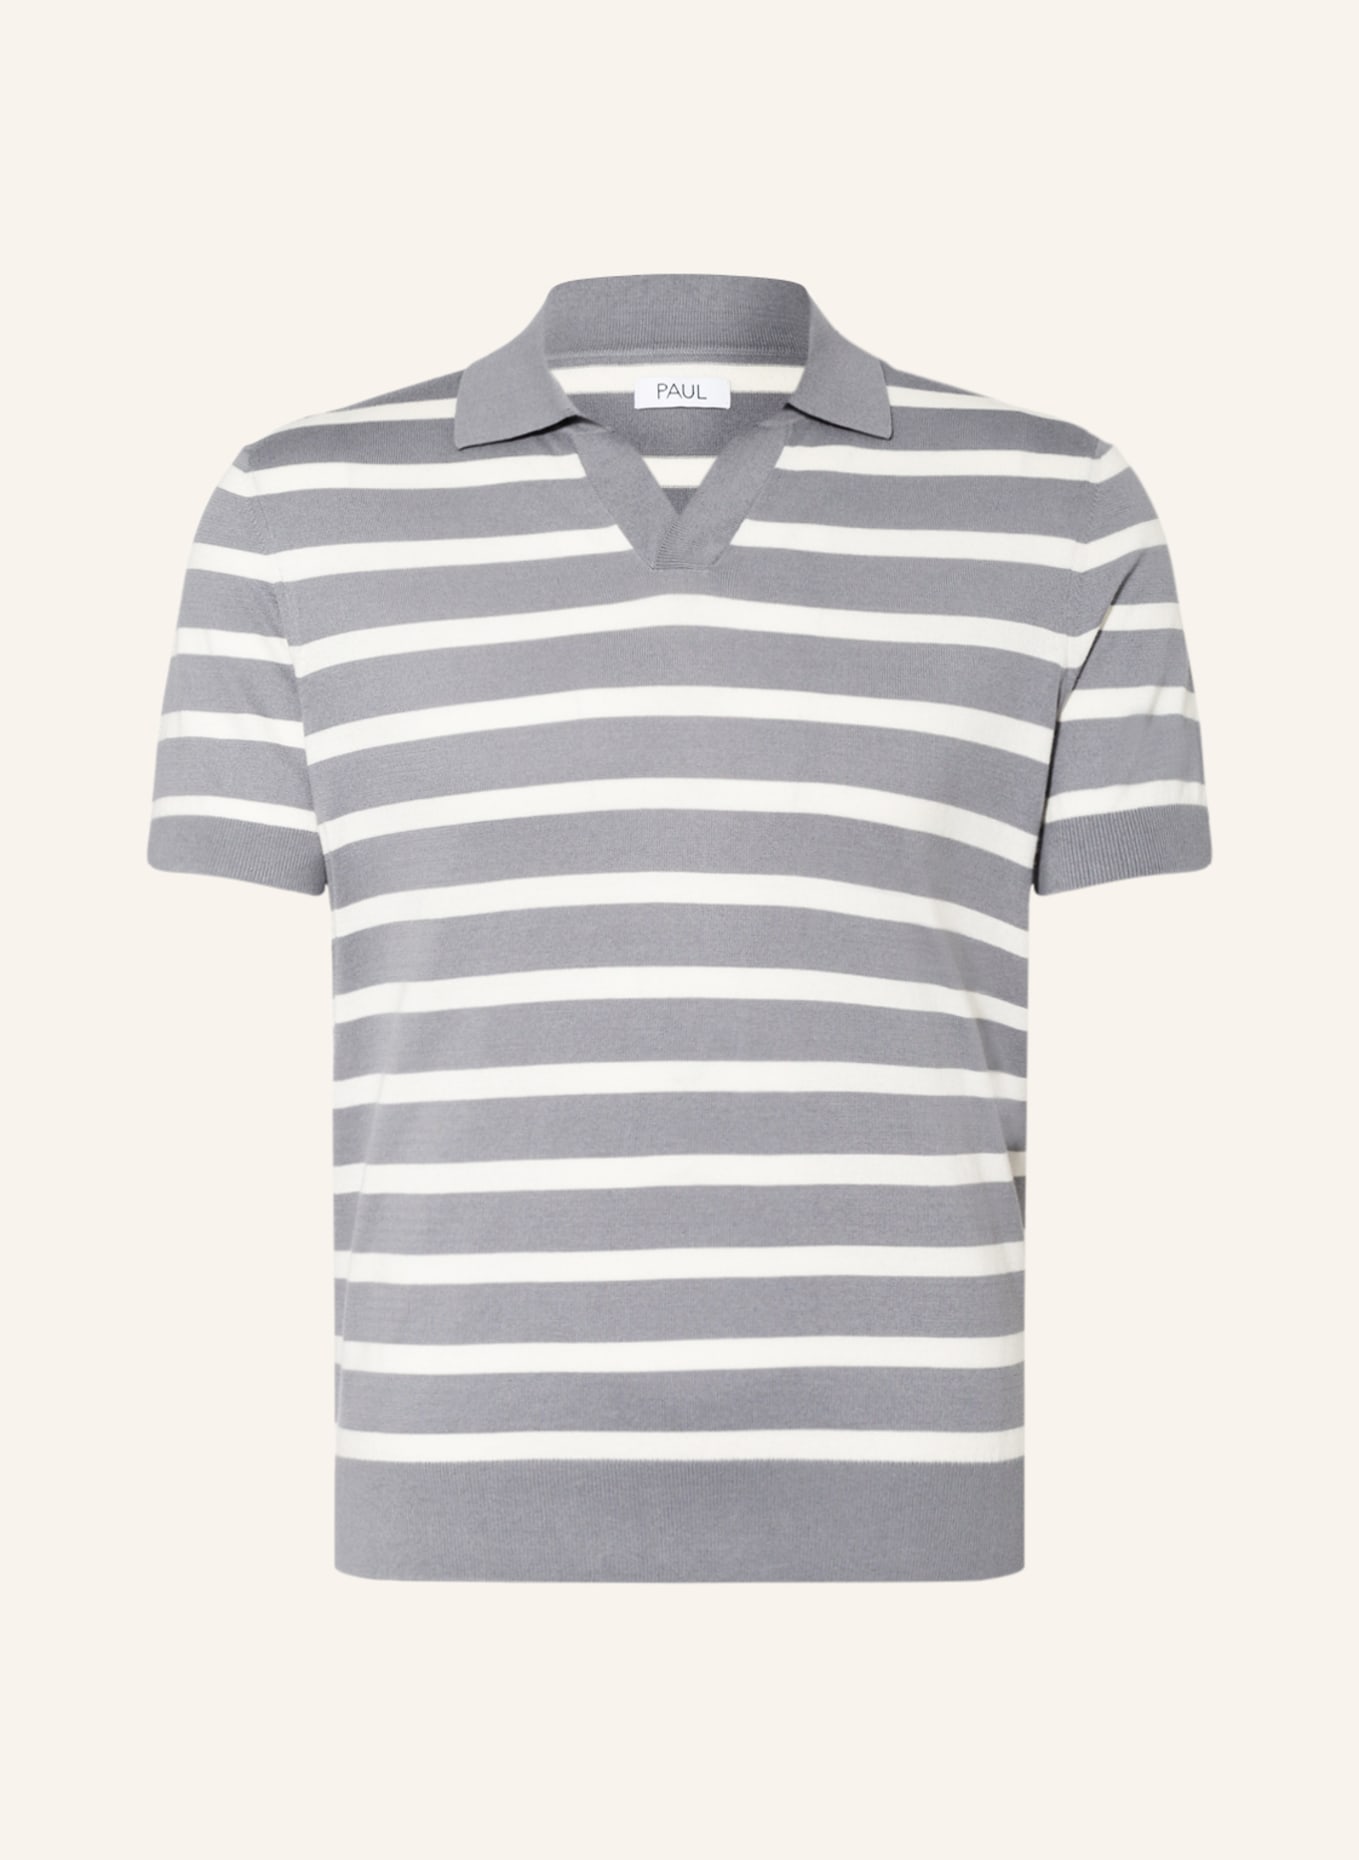 PAUL Strick-Poloshirt, Farbe: WEISS/ GRAU (Bild 1)